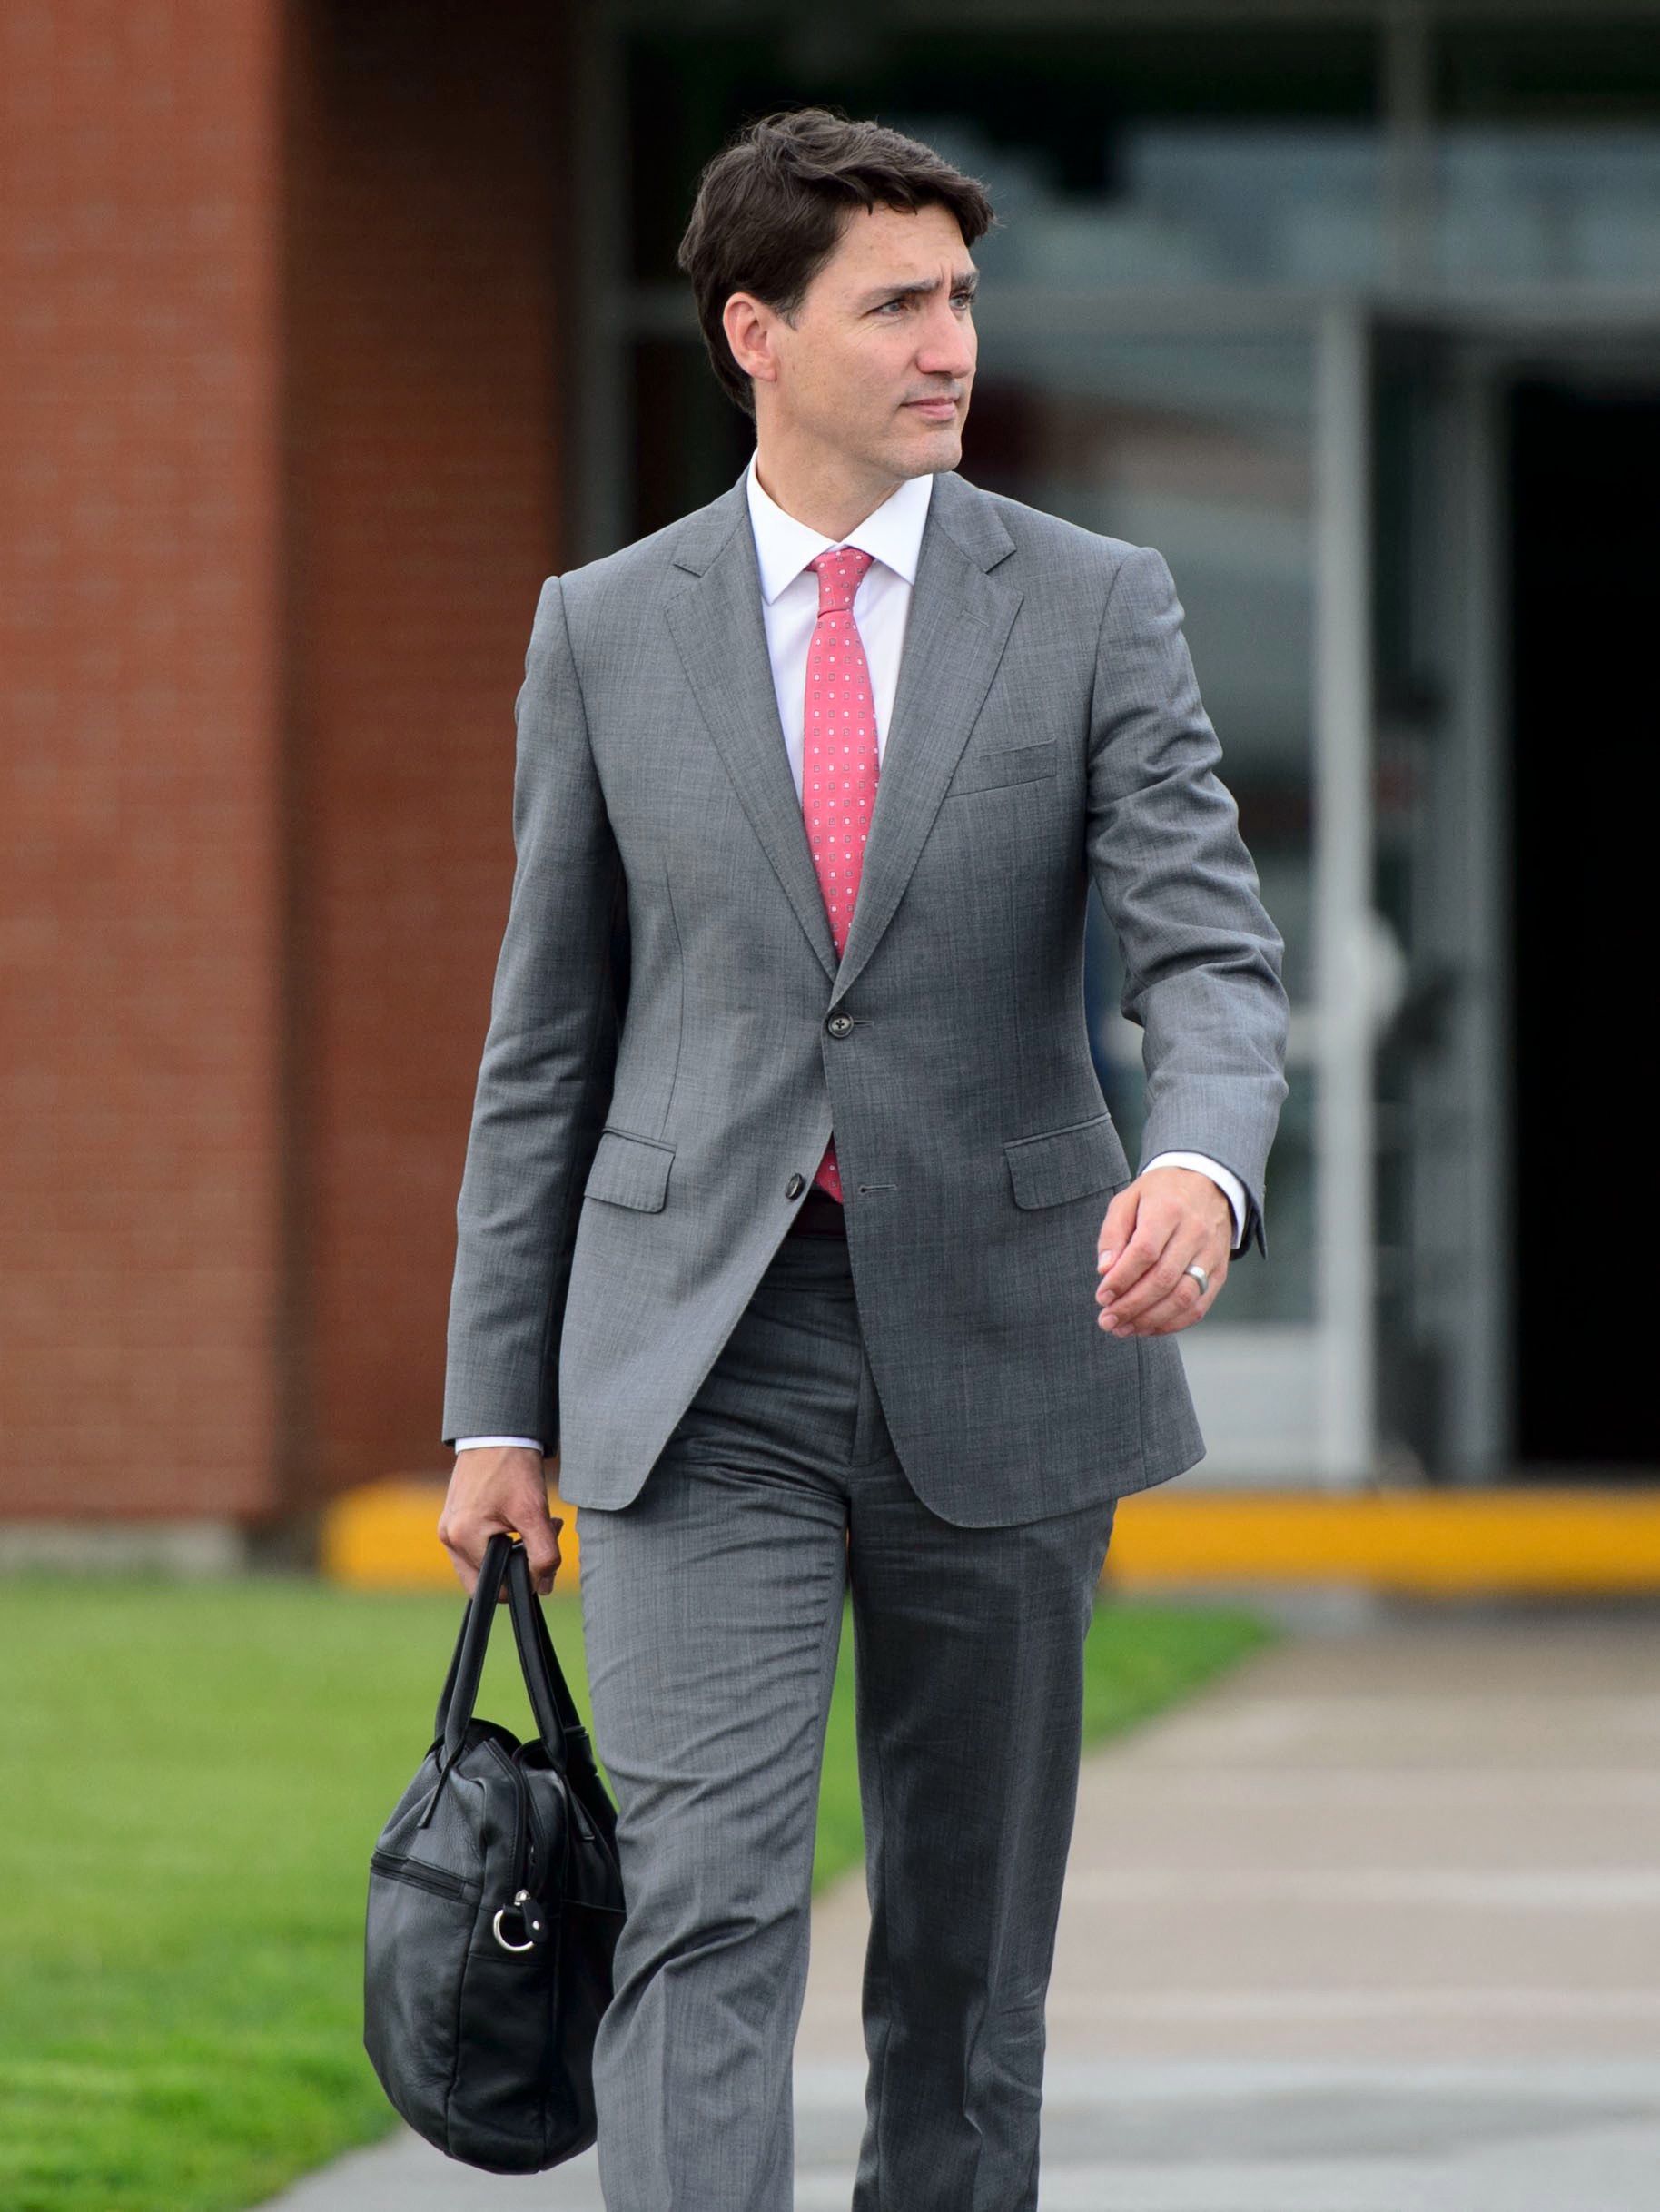 加拿大总理特鲁多飞抵美国 将同特朗普会面